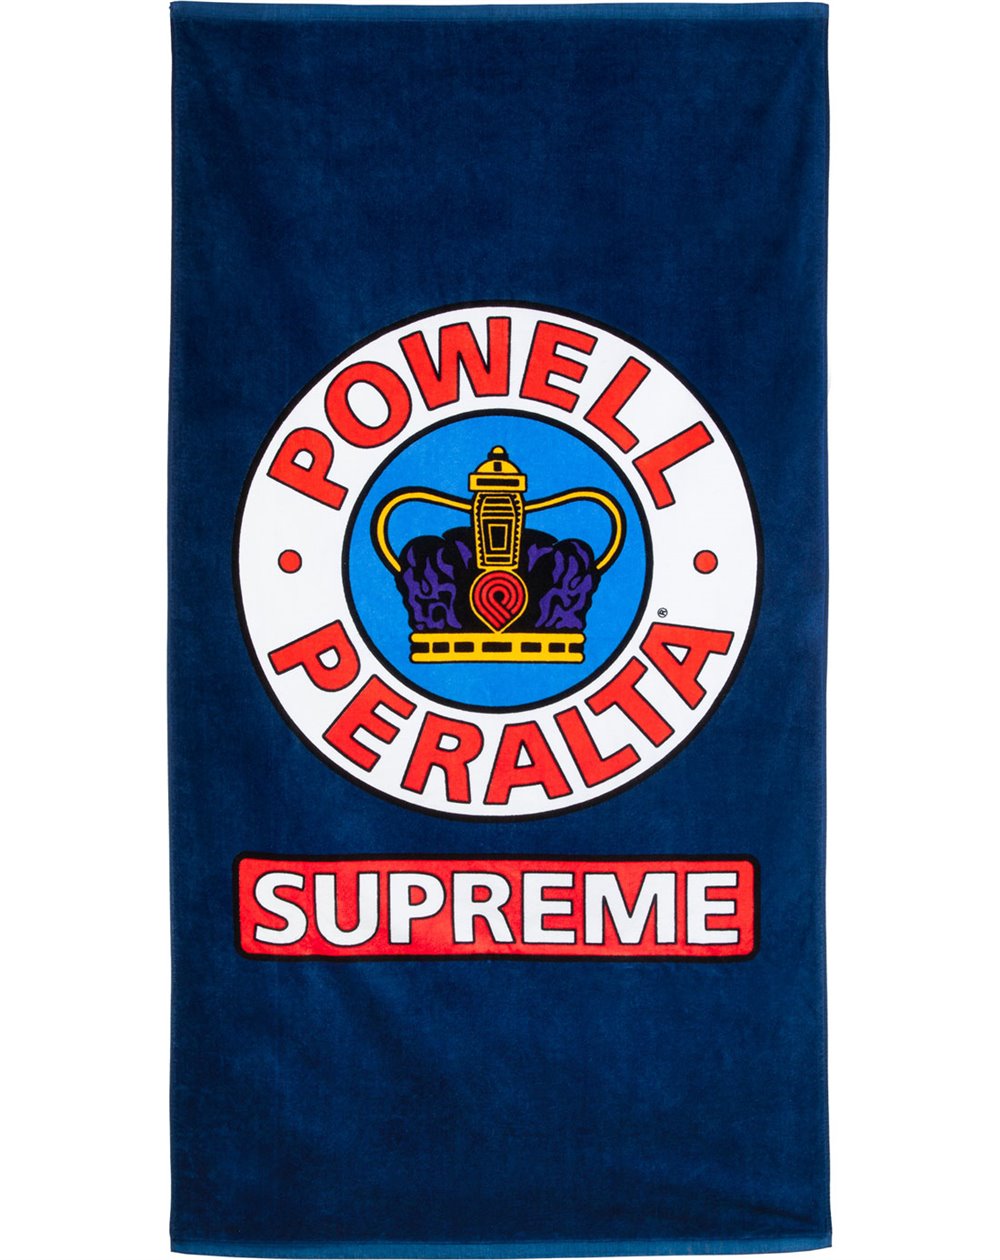 Powell Peralta Supreme Telo Mare